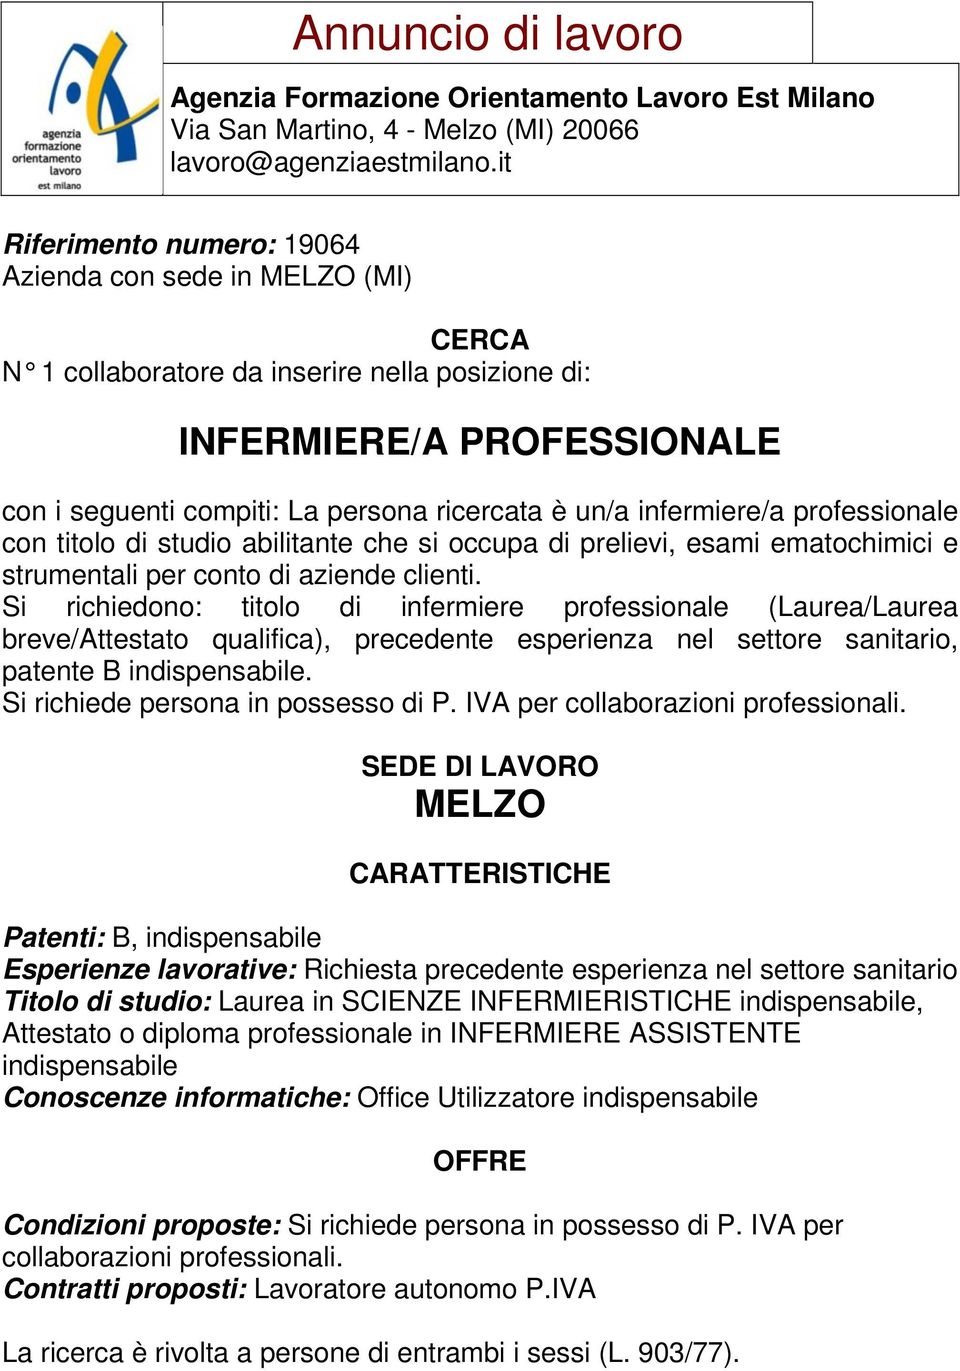 Si richiedono: titolo di infermiere professionale (Laurea/Laurea breve/attestato qualifica), precedente esperienza nel settore sanitario, patente B indispensabile.